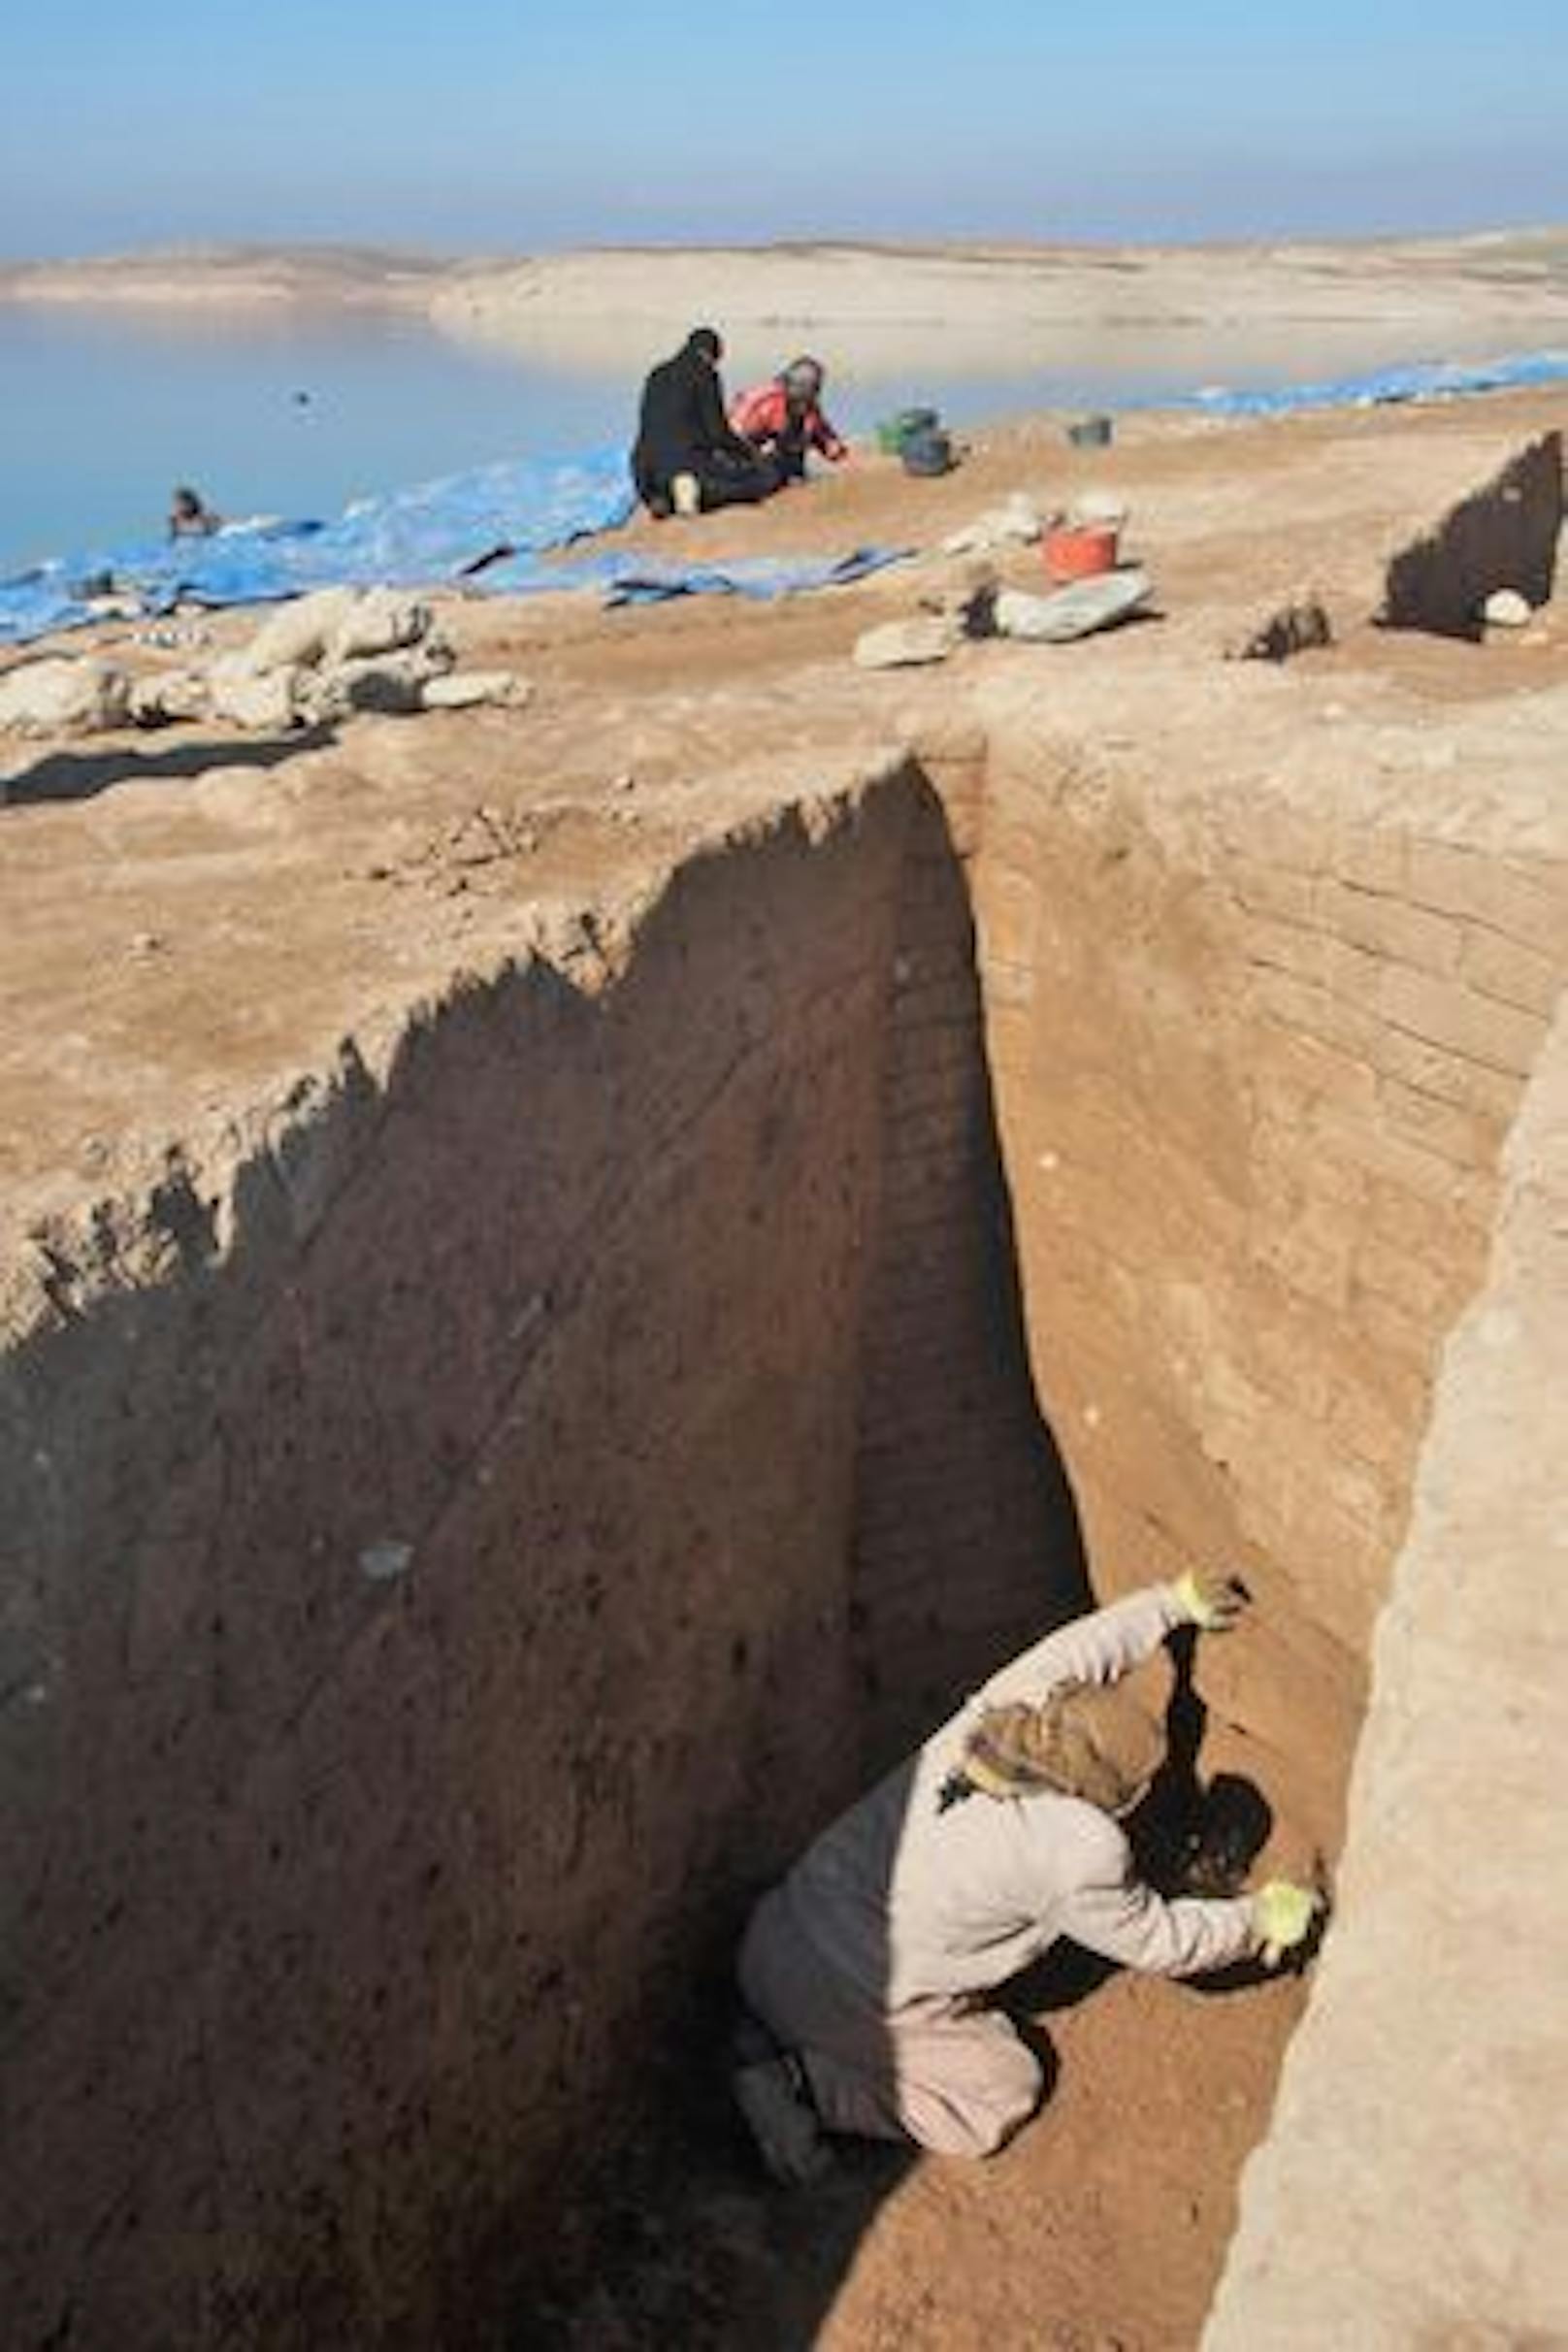 Das Forschungsteam war verblüfft über den gut erhaltenen Zustand der Mauern – teilweise mehrere Meter hoch –, obwohl die Mauern aus sonnengetrockneten Lehmziegeln bestehen und mehr als 40 Jahre unter Wasser standen.